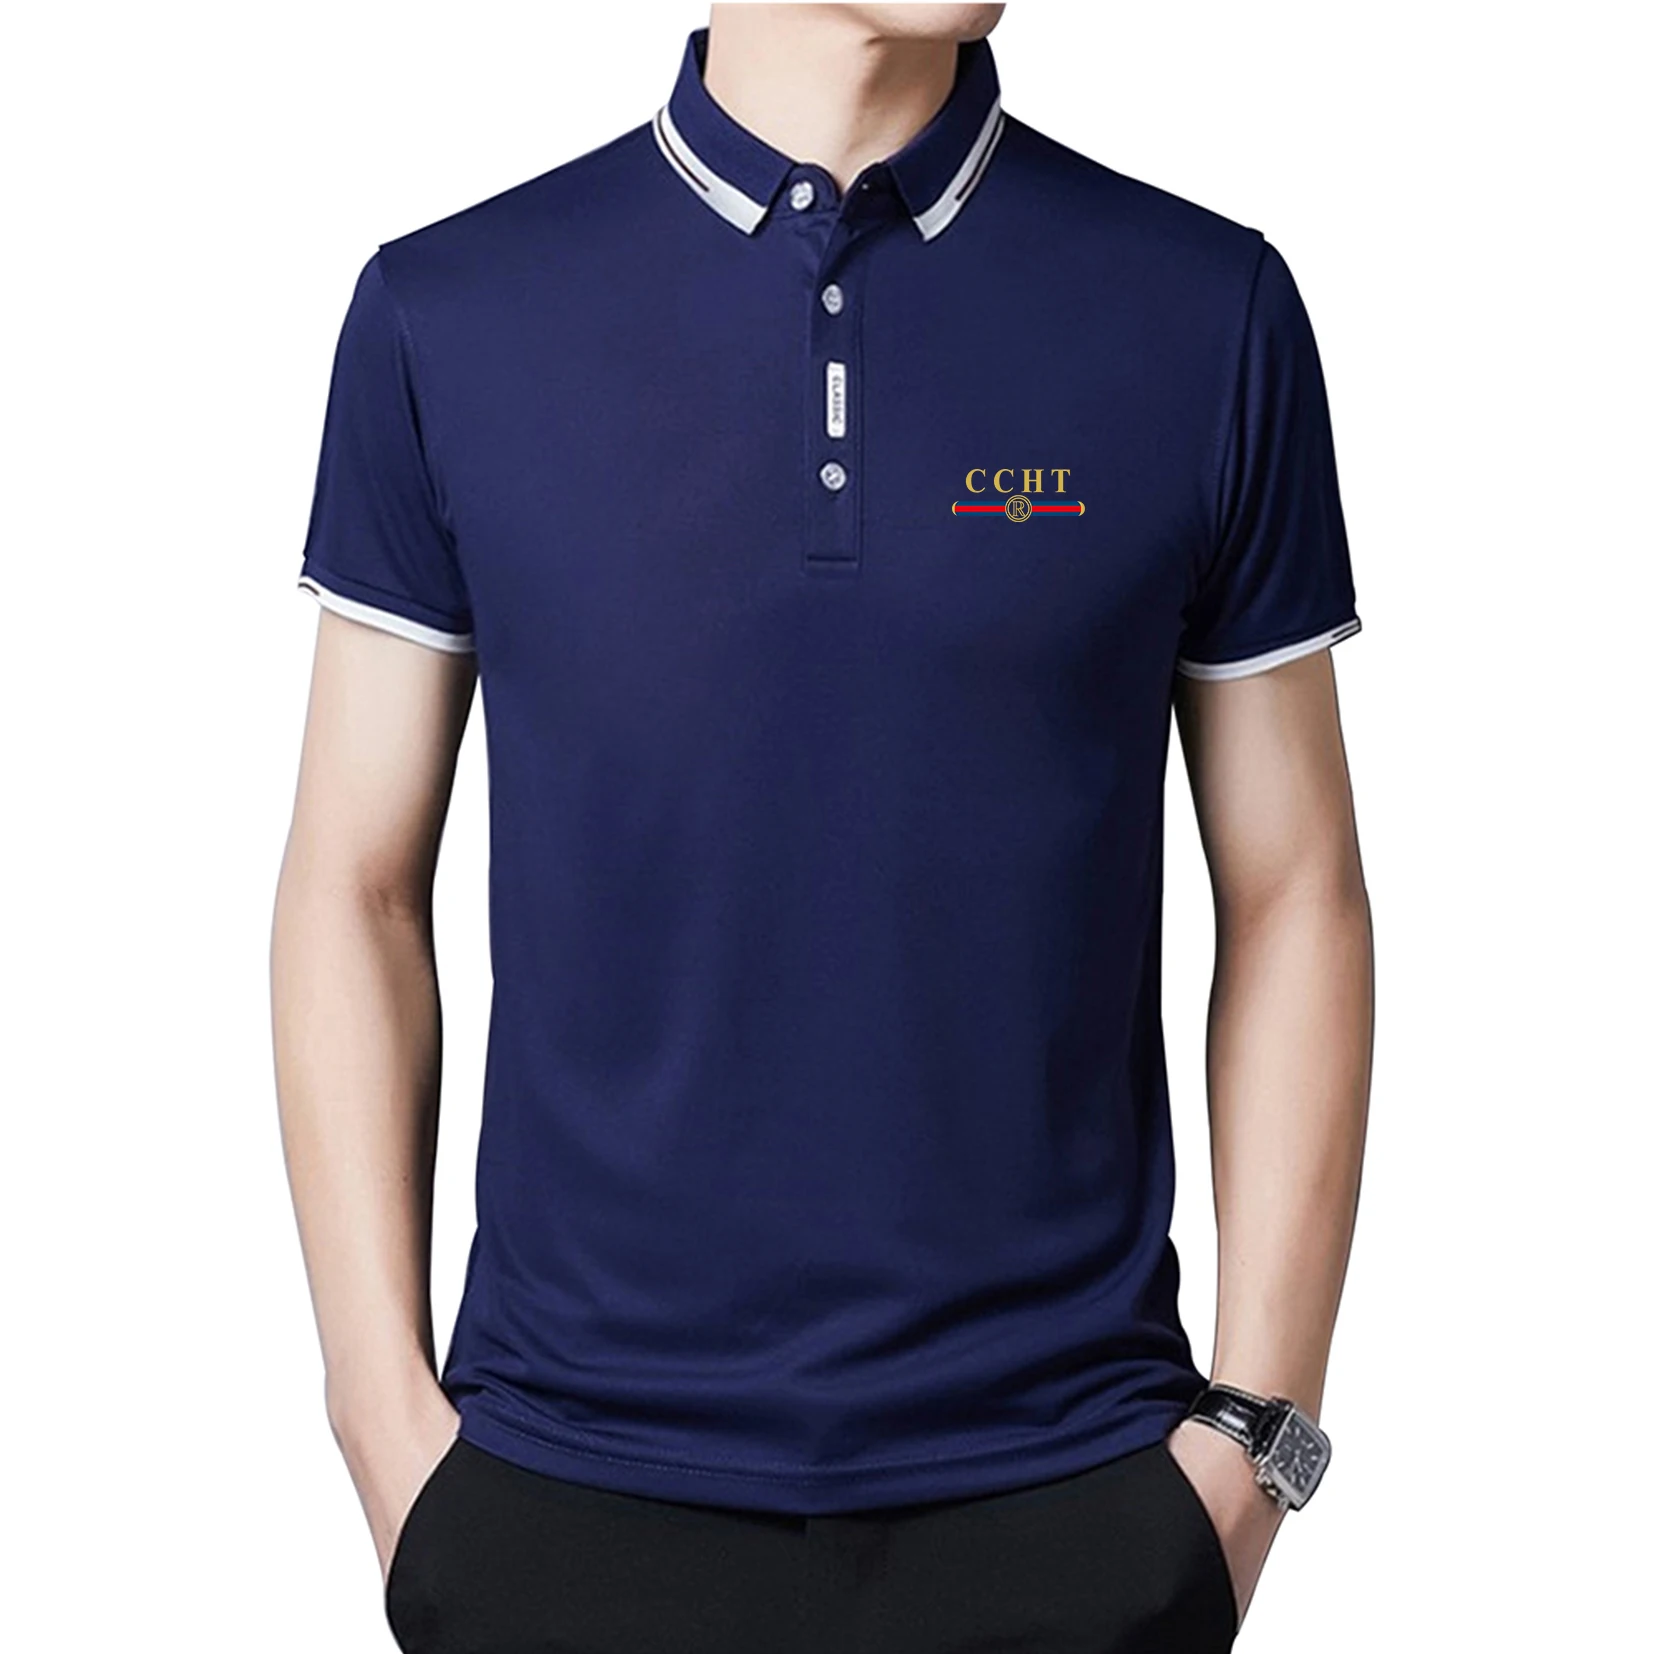 Nova Marca de Moda CCHT Impressão Homens de Camisa de Polo dos Homens de Alta Qualidade de Algodão Camisa de Manga Curta Marcas de Camisas polos de Verão